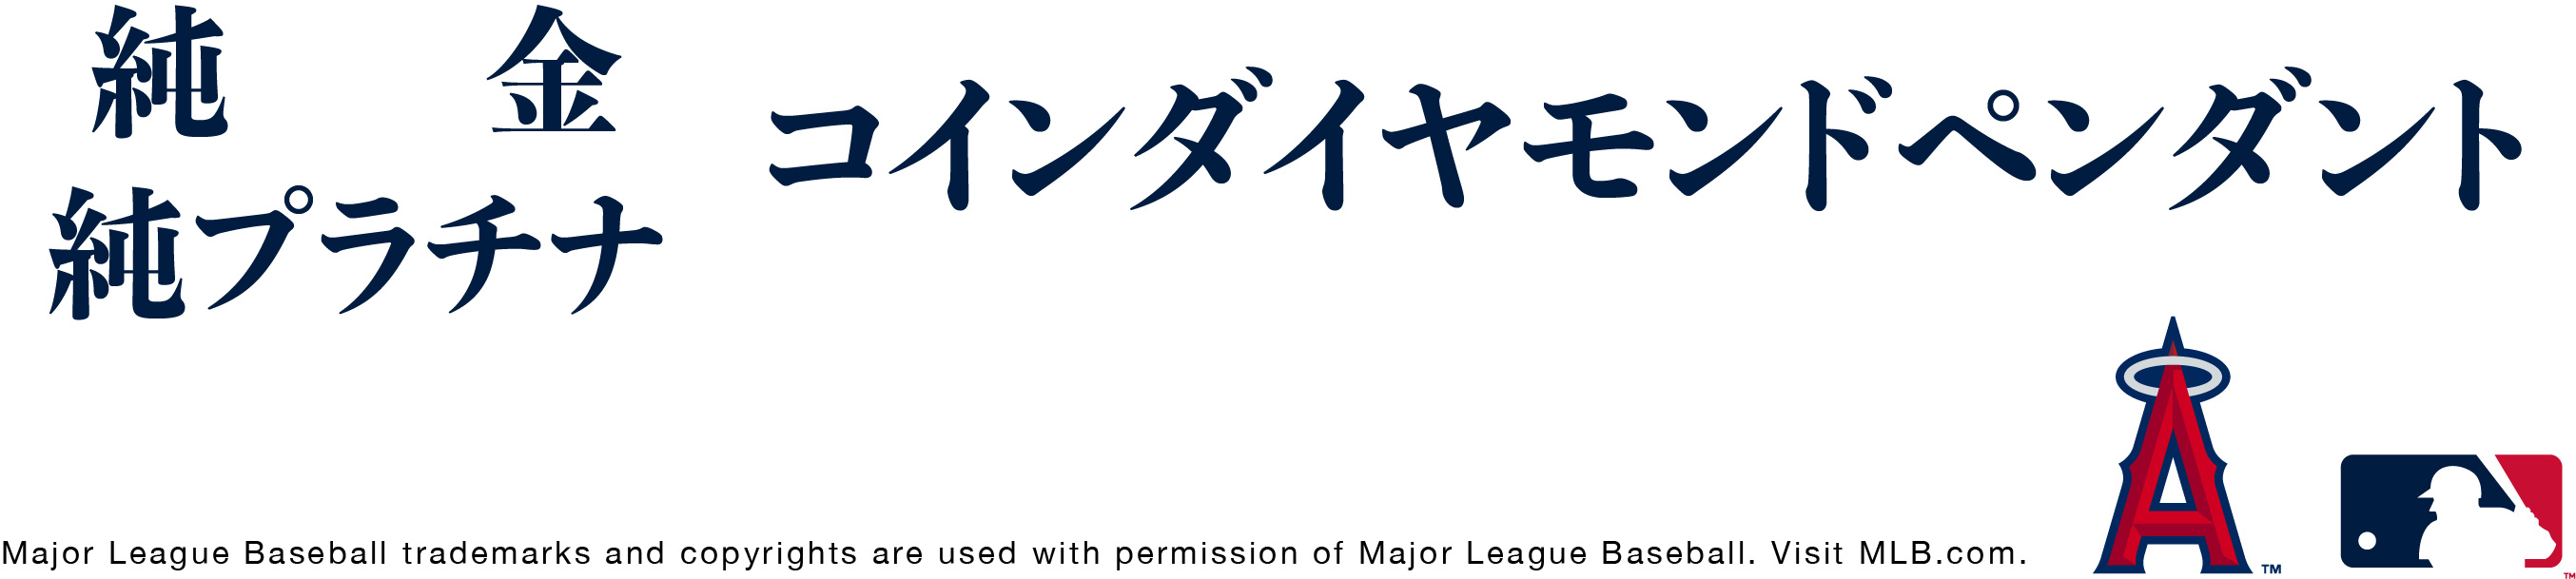 純金 純プラチナ コインダイヤモンドペンダント Major League Baseball trademarks and copyrights are used with permission of Major League Baseball. Visit MLB.com.